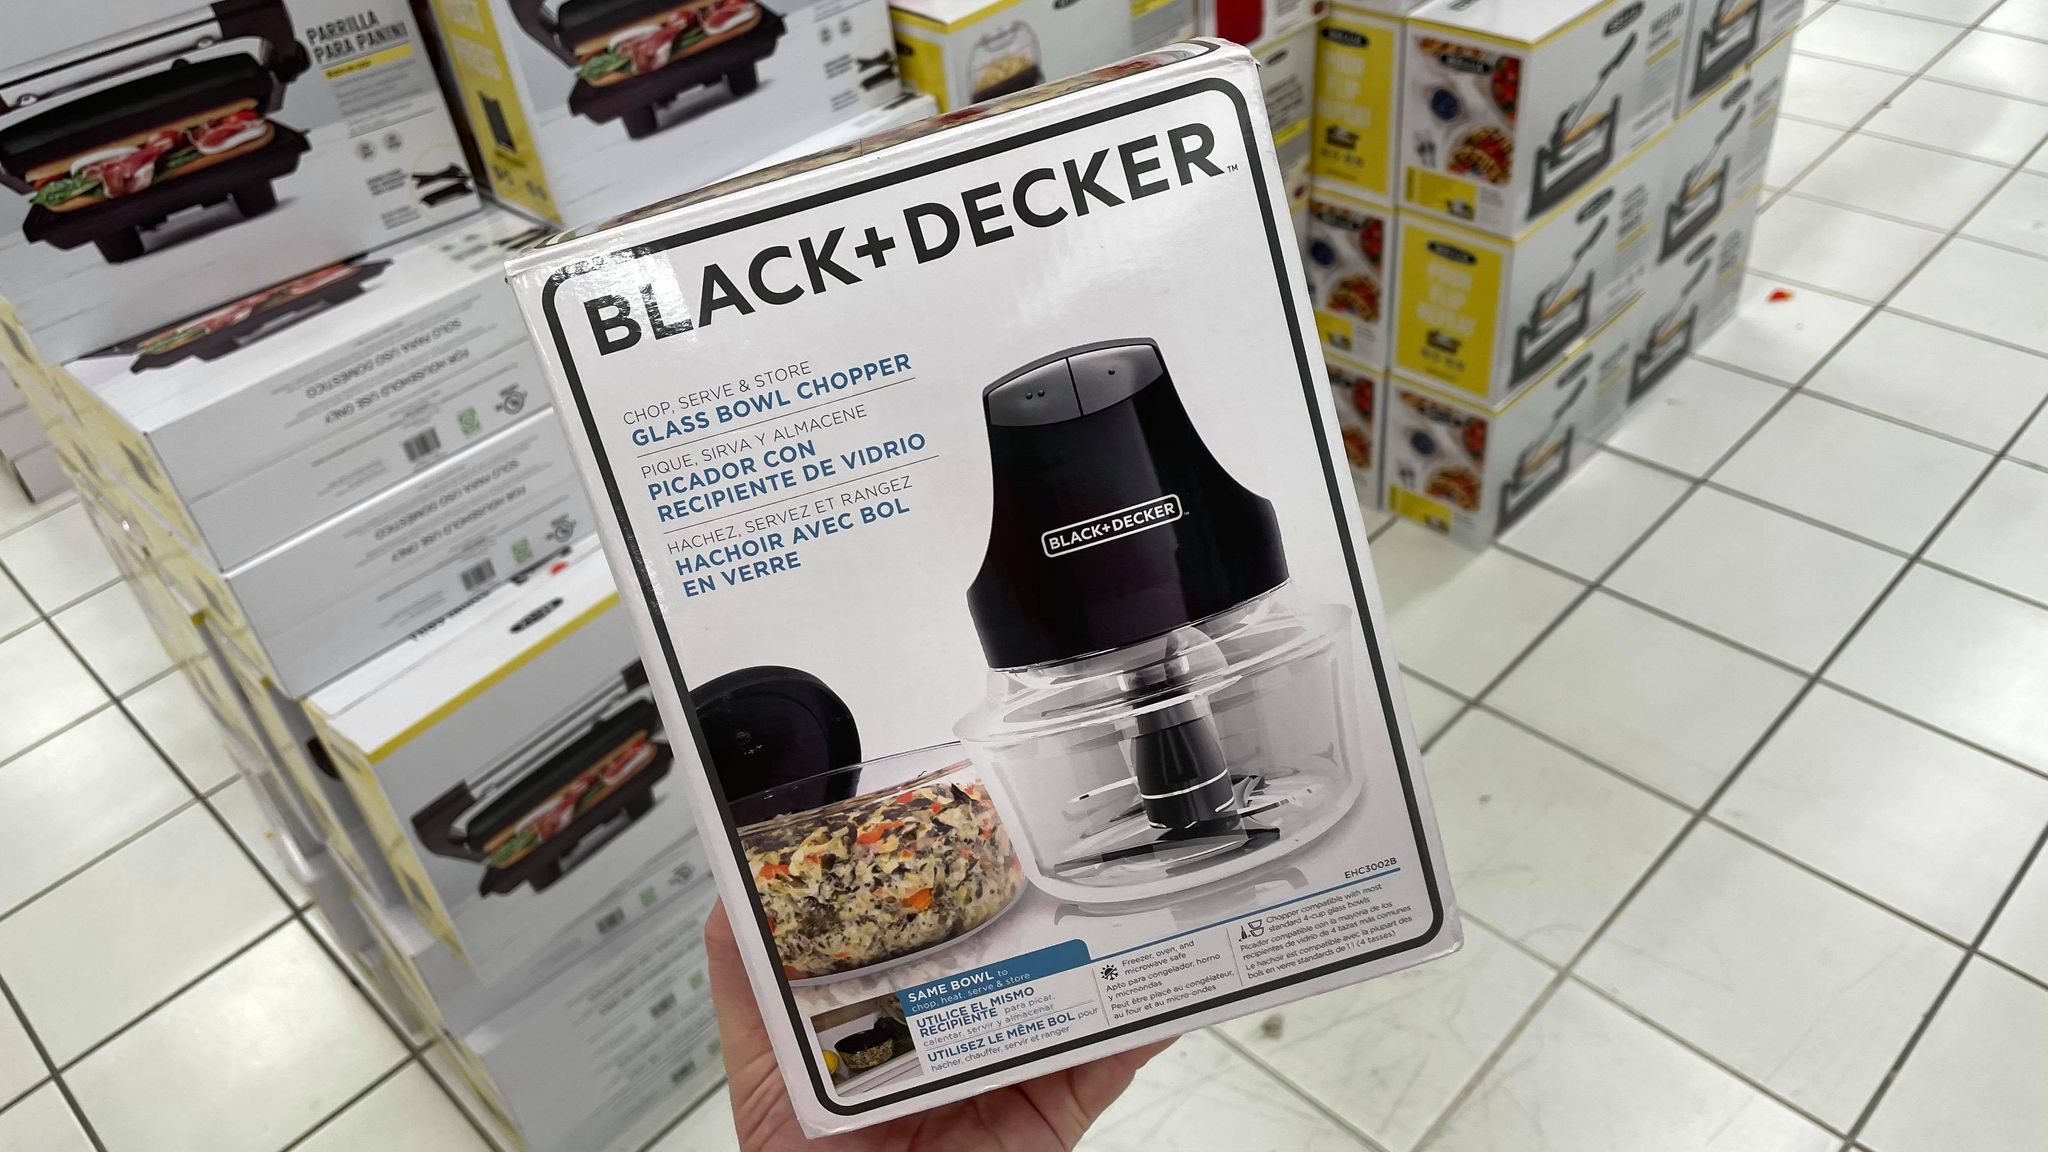 https://thefreebieguy.com/wp-content/uploads/2020/11/Black-Decker-Glass-Bowl-Chopper.jpg